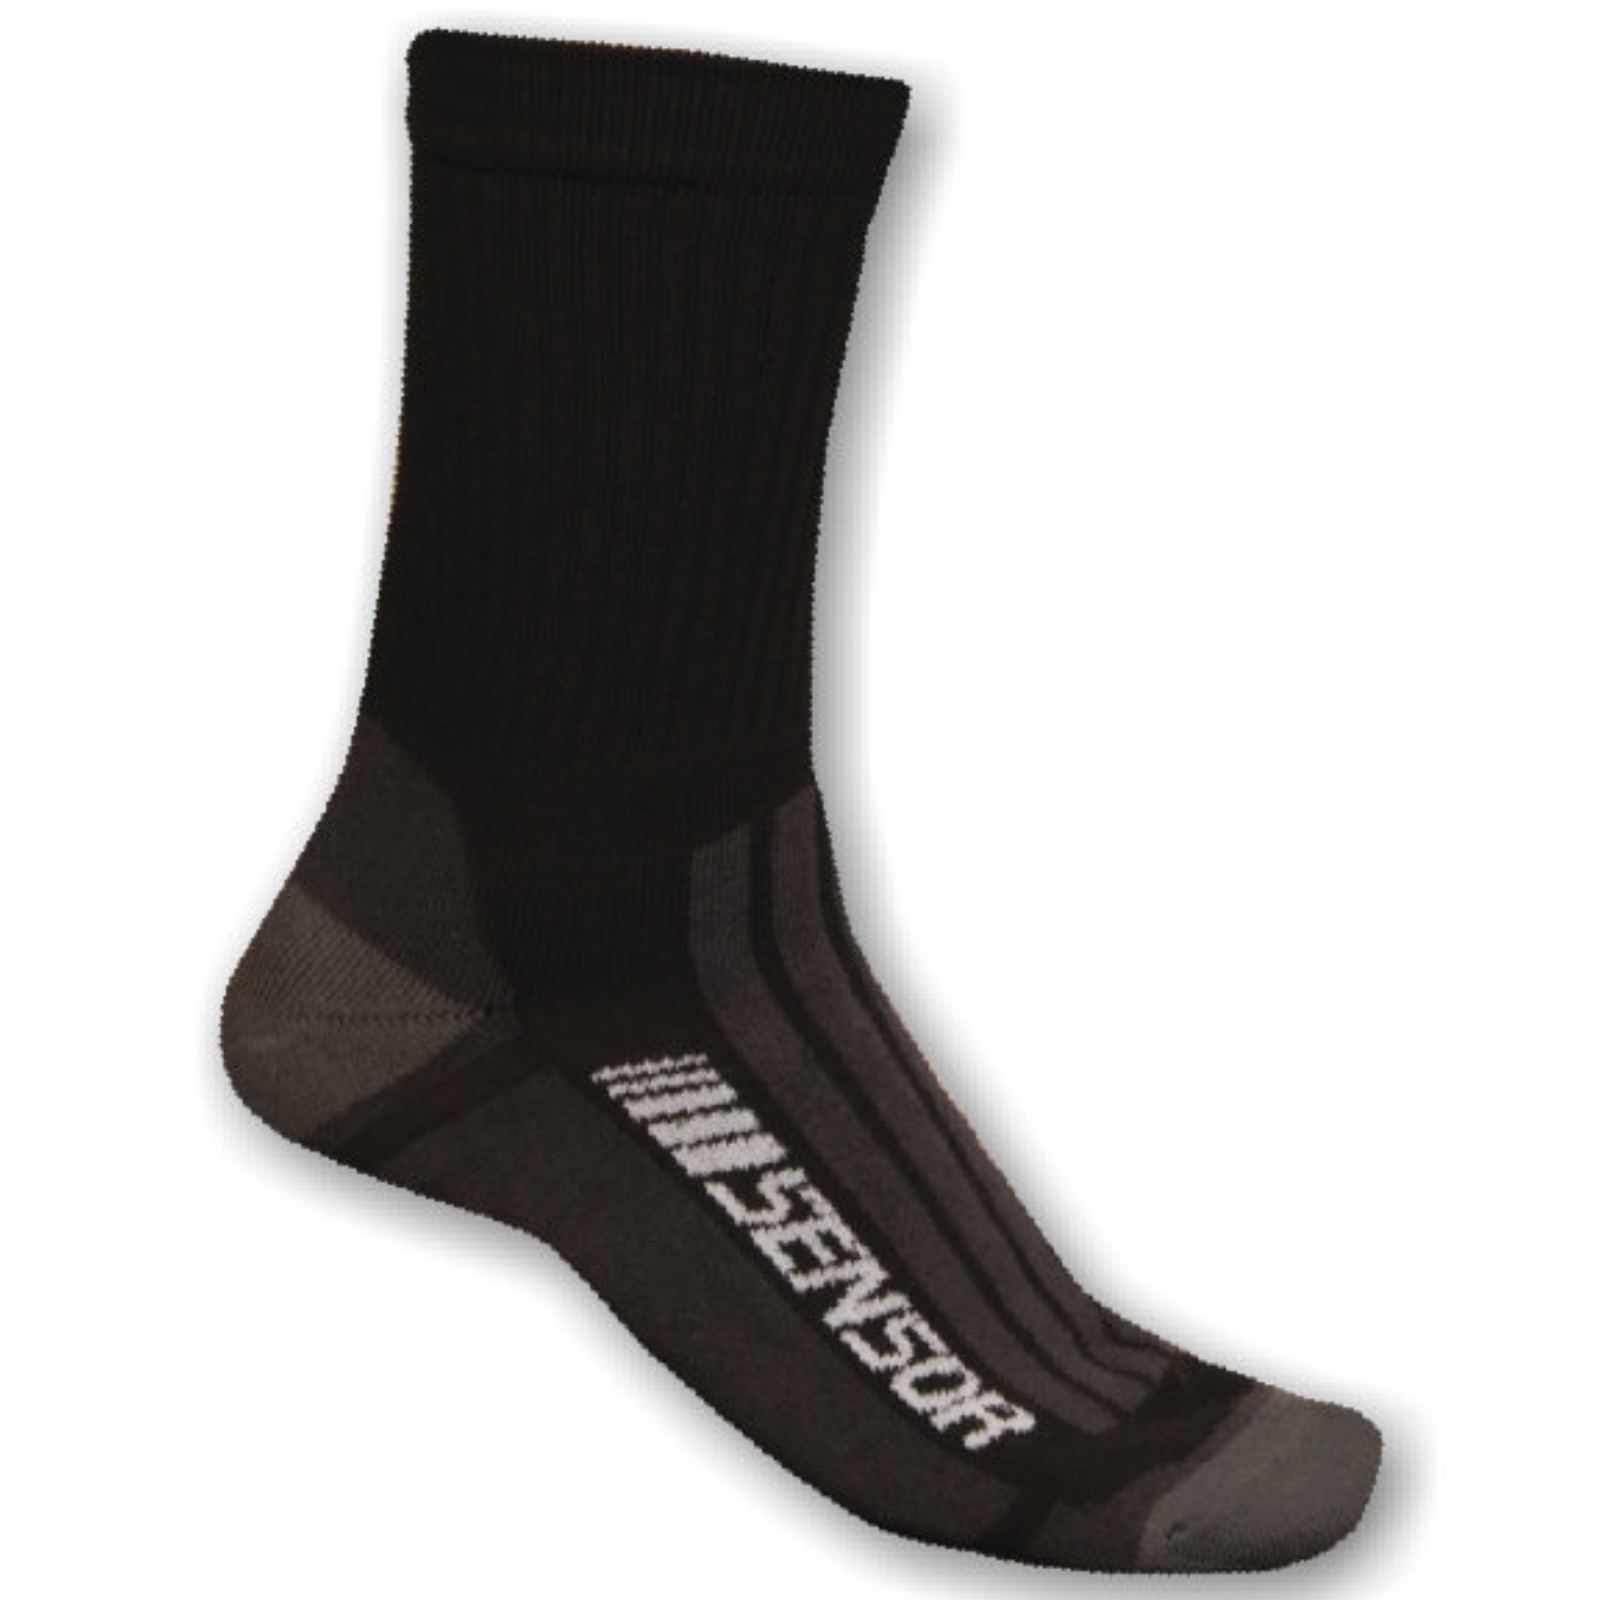 Ponožky SENSOR Treking Merino černo-šedé - vel. 6-8